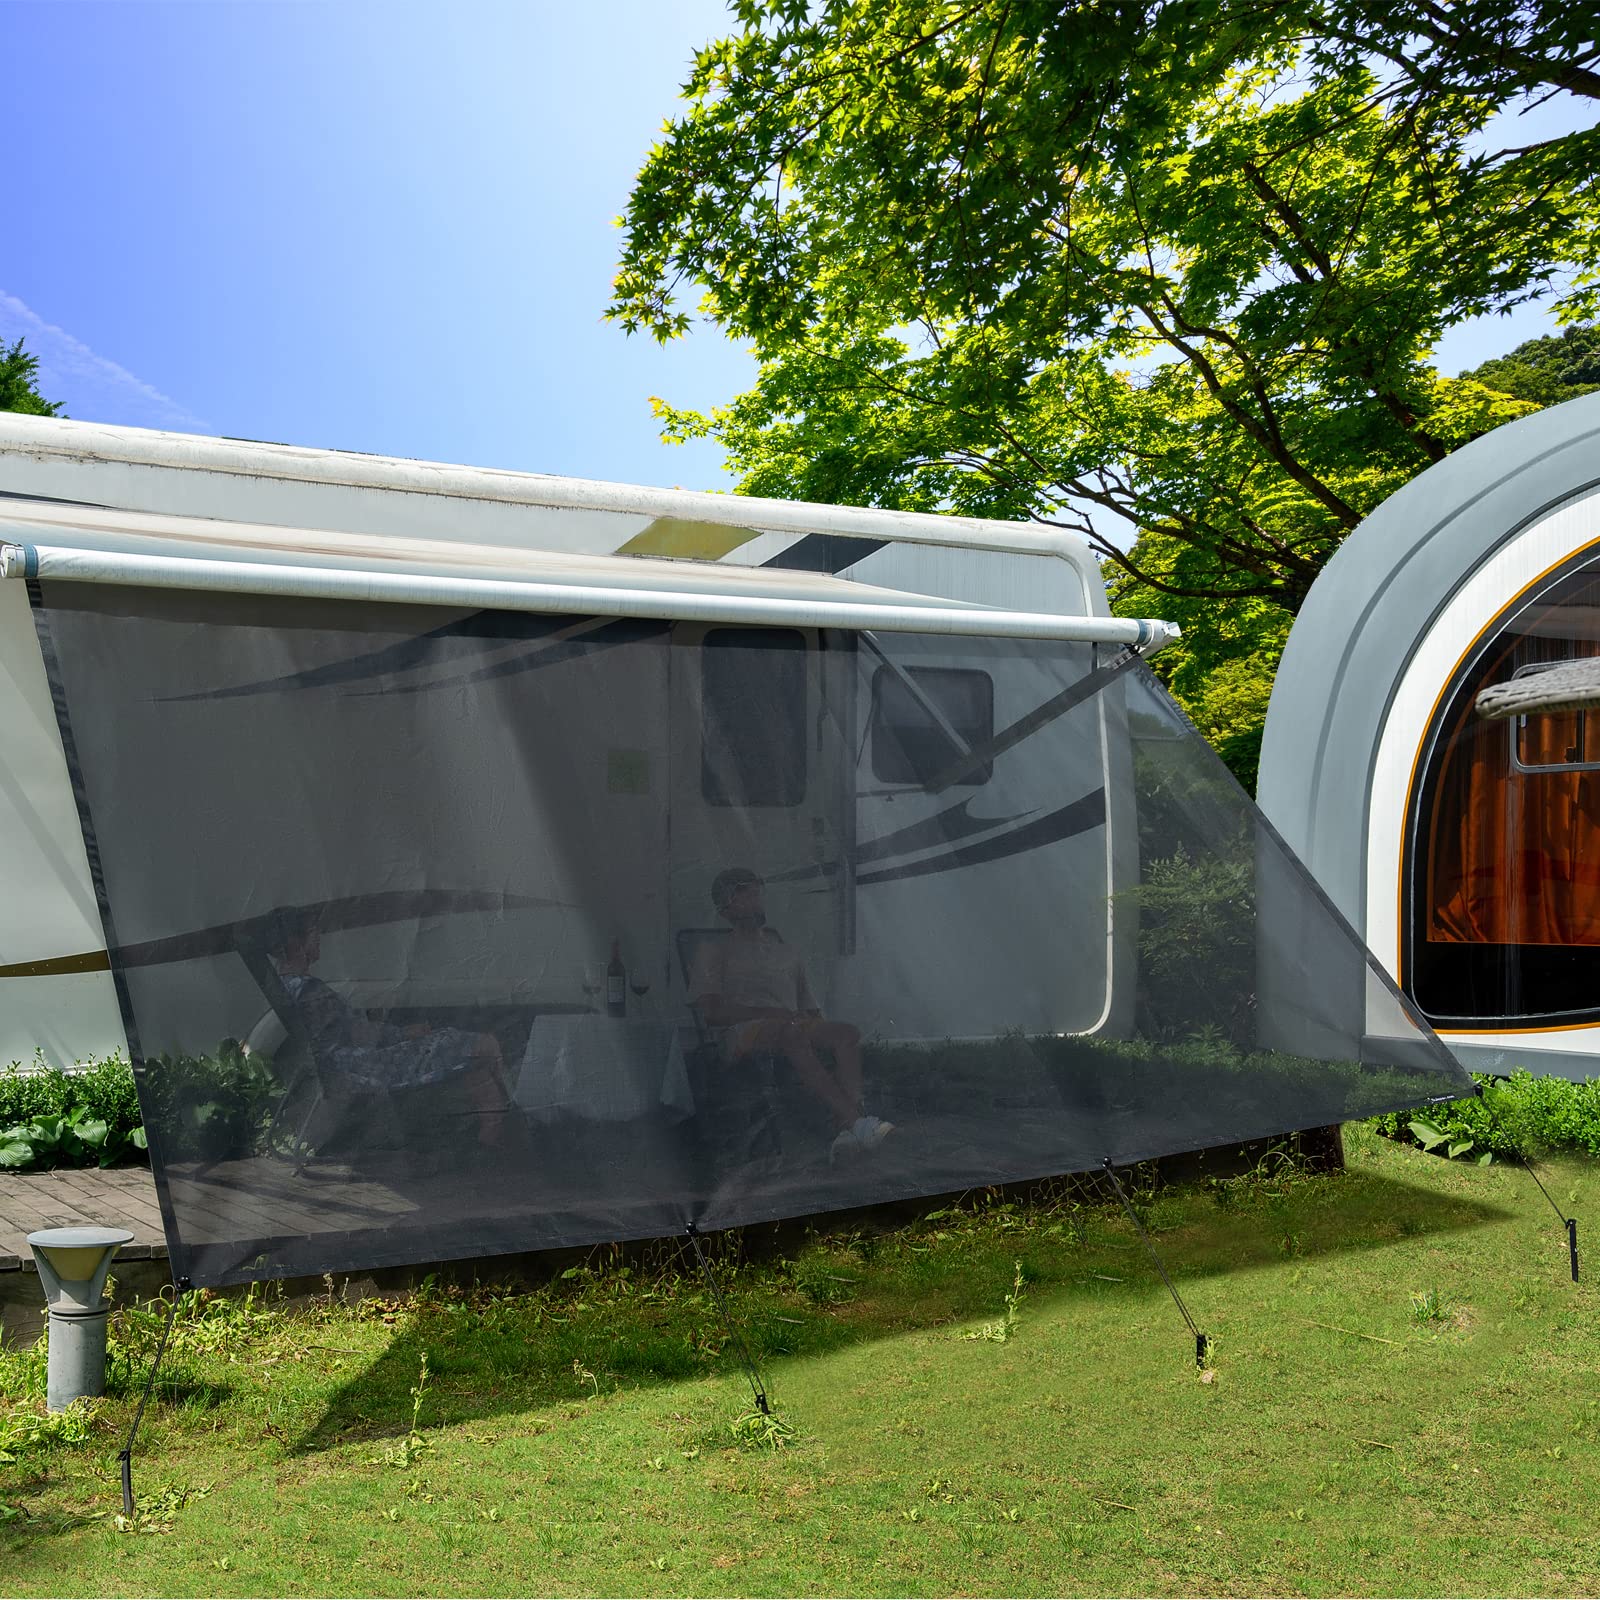 Wohnmobil View Blocker Sonnenschutz, universeller RV Markisen Sichtschutz Vorderwand Bildschirm, 2,46 m x 2,85 m, mit kompletten Kits.¡" von Dulepax